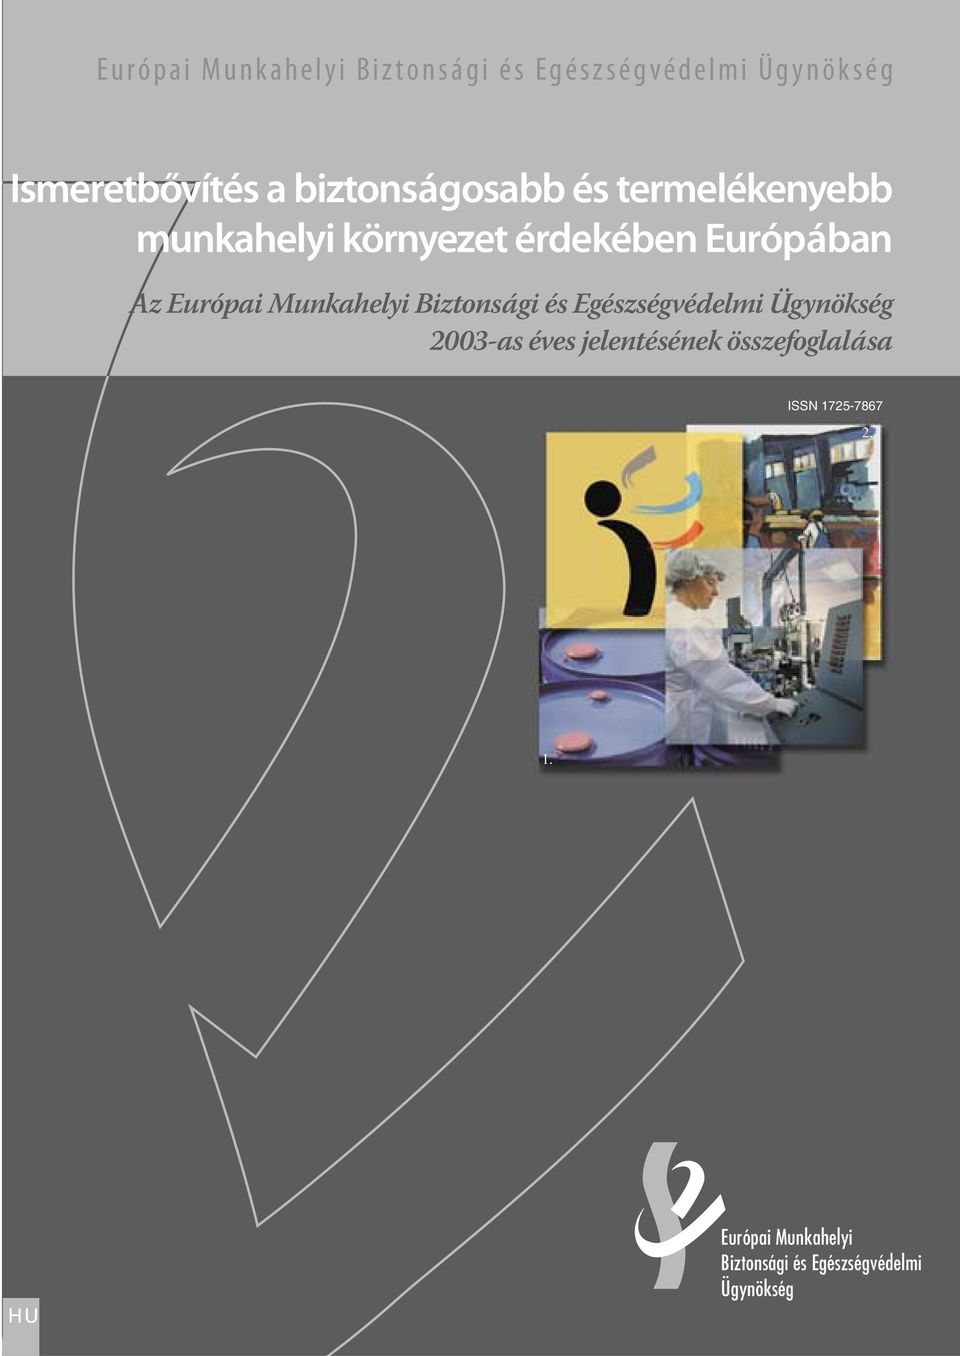 Európai Munkahelyi Biztonsági és Egészségvédelmi Ügynökség 2003-as éves